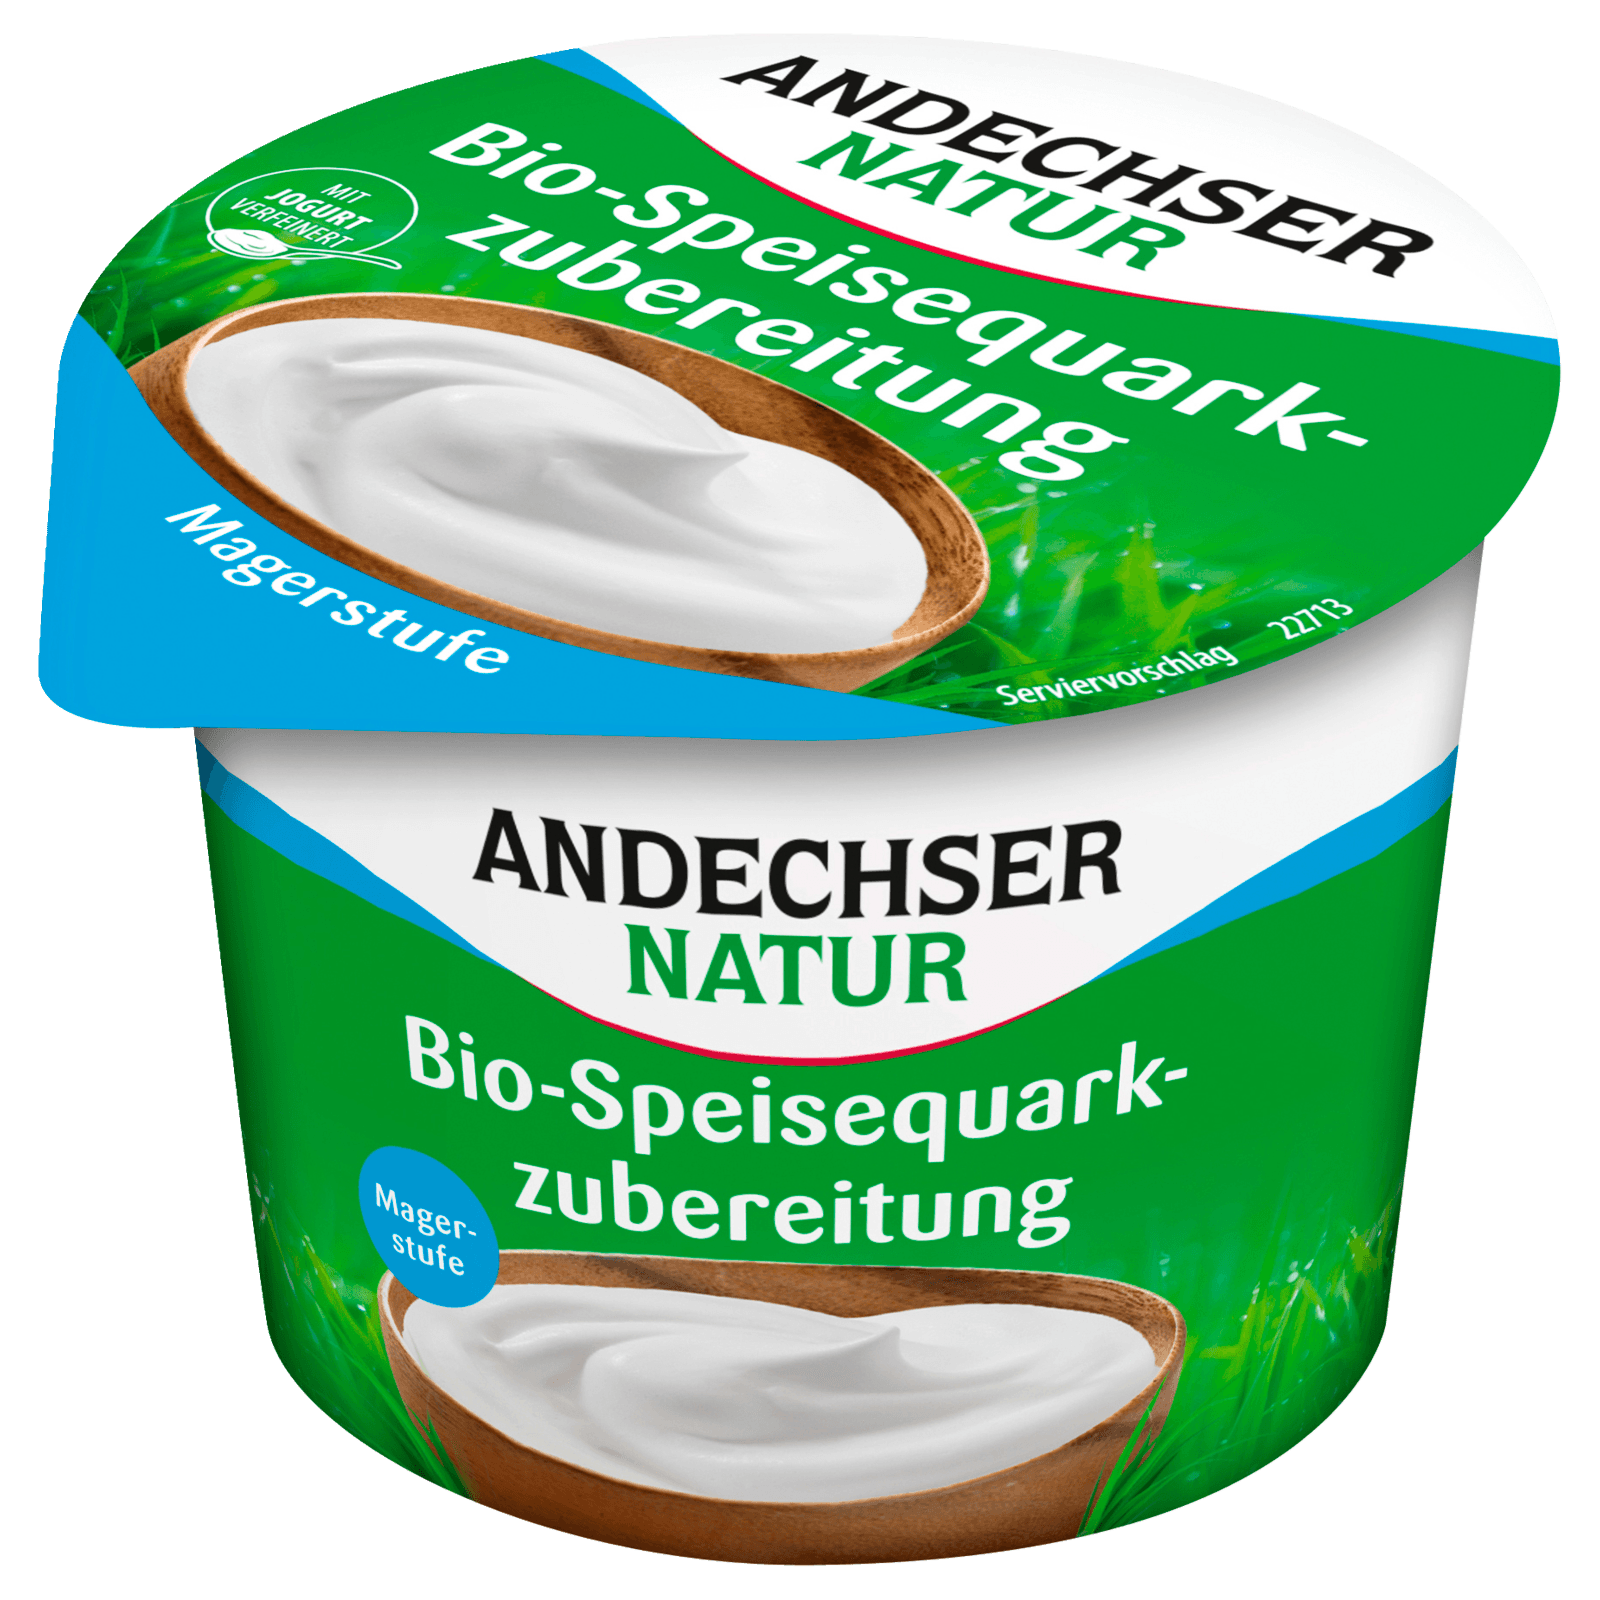 Andechser Natur Bio-Speisequarkzubereitung Magerstufe mit Joghurt 250g